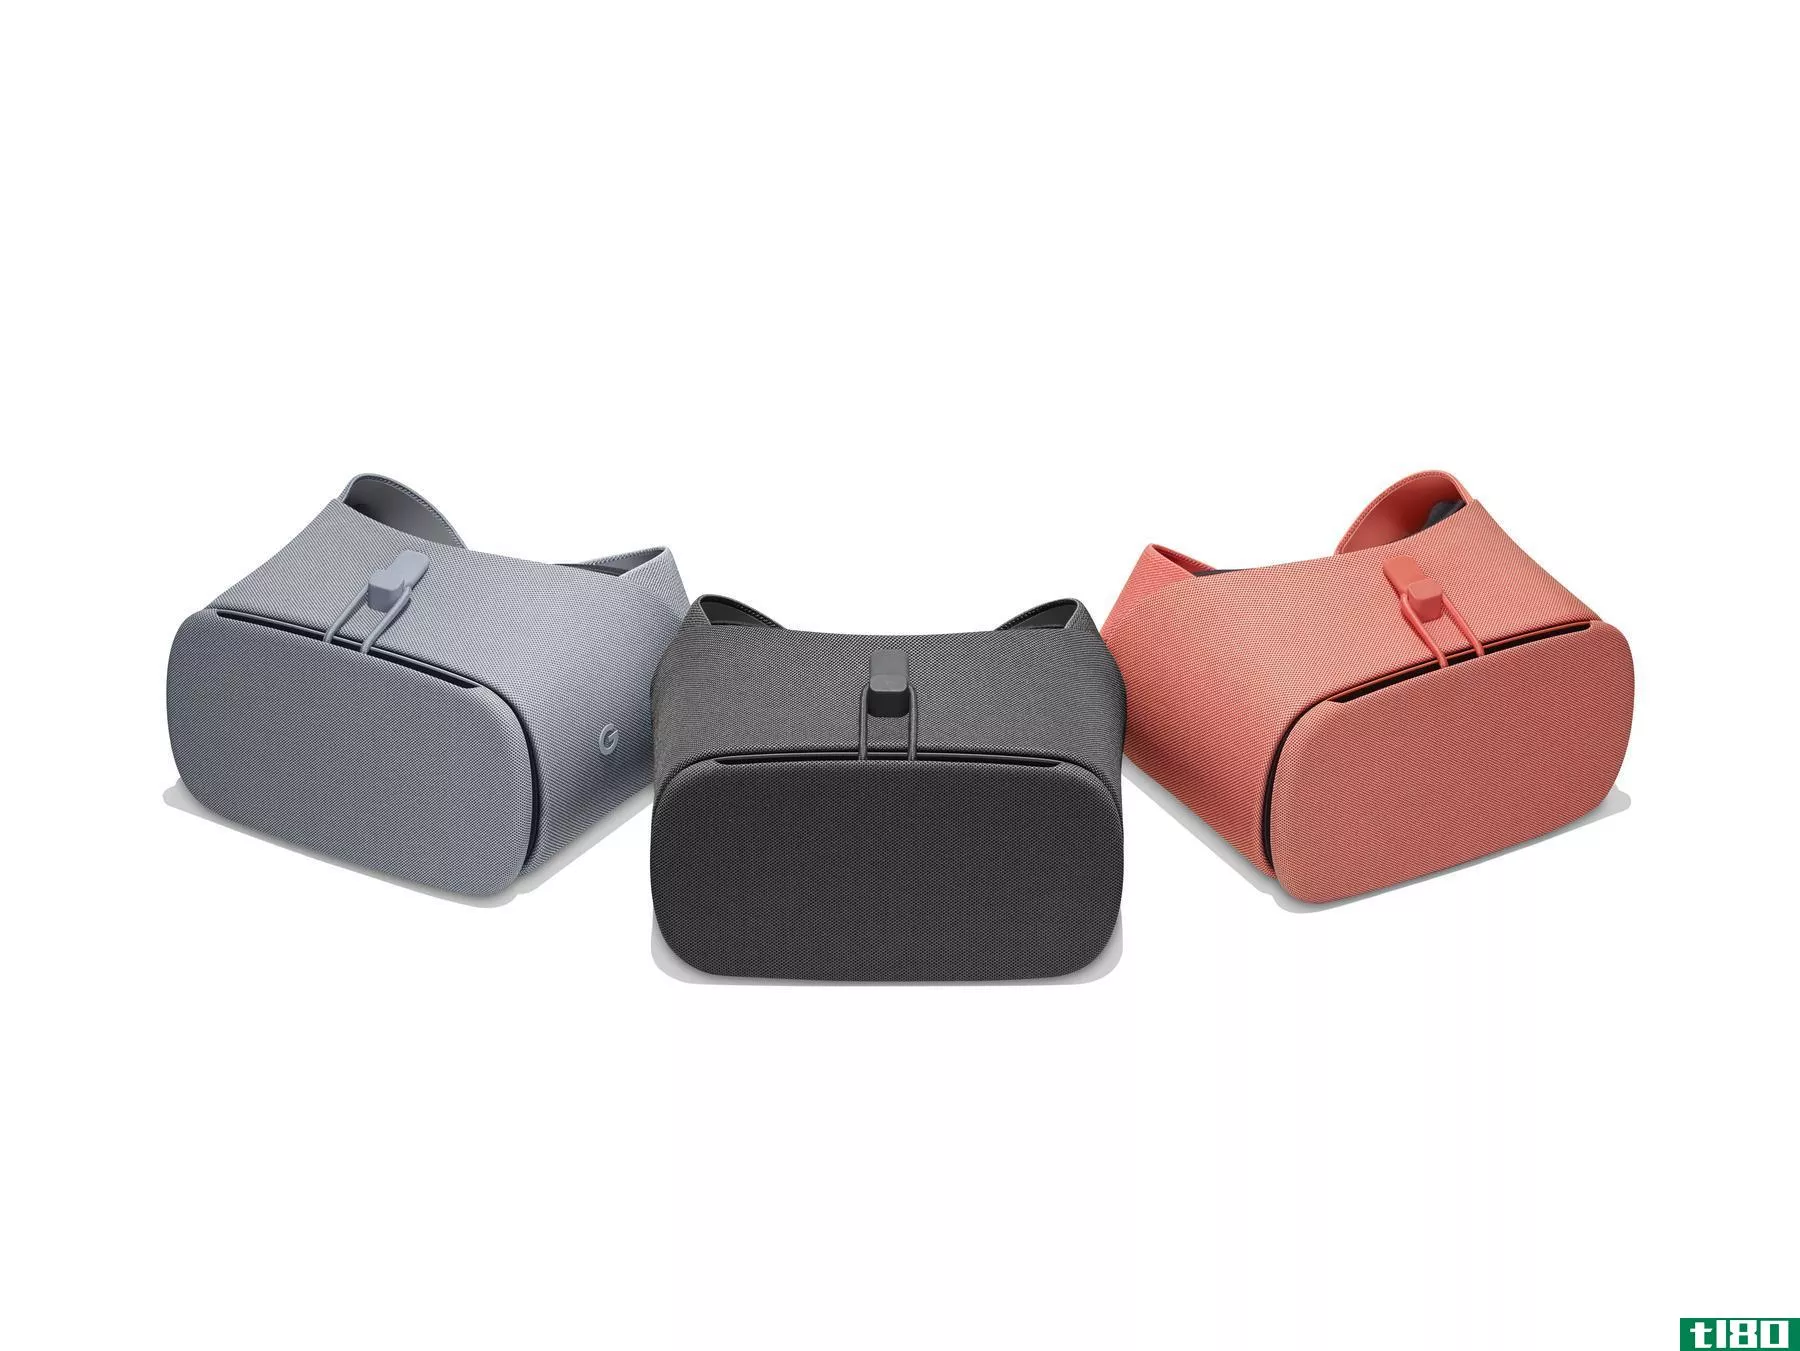 新的99美元谷歌白日梦视图虚拟现实耳机宣布与三个新的颜色